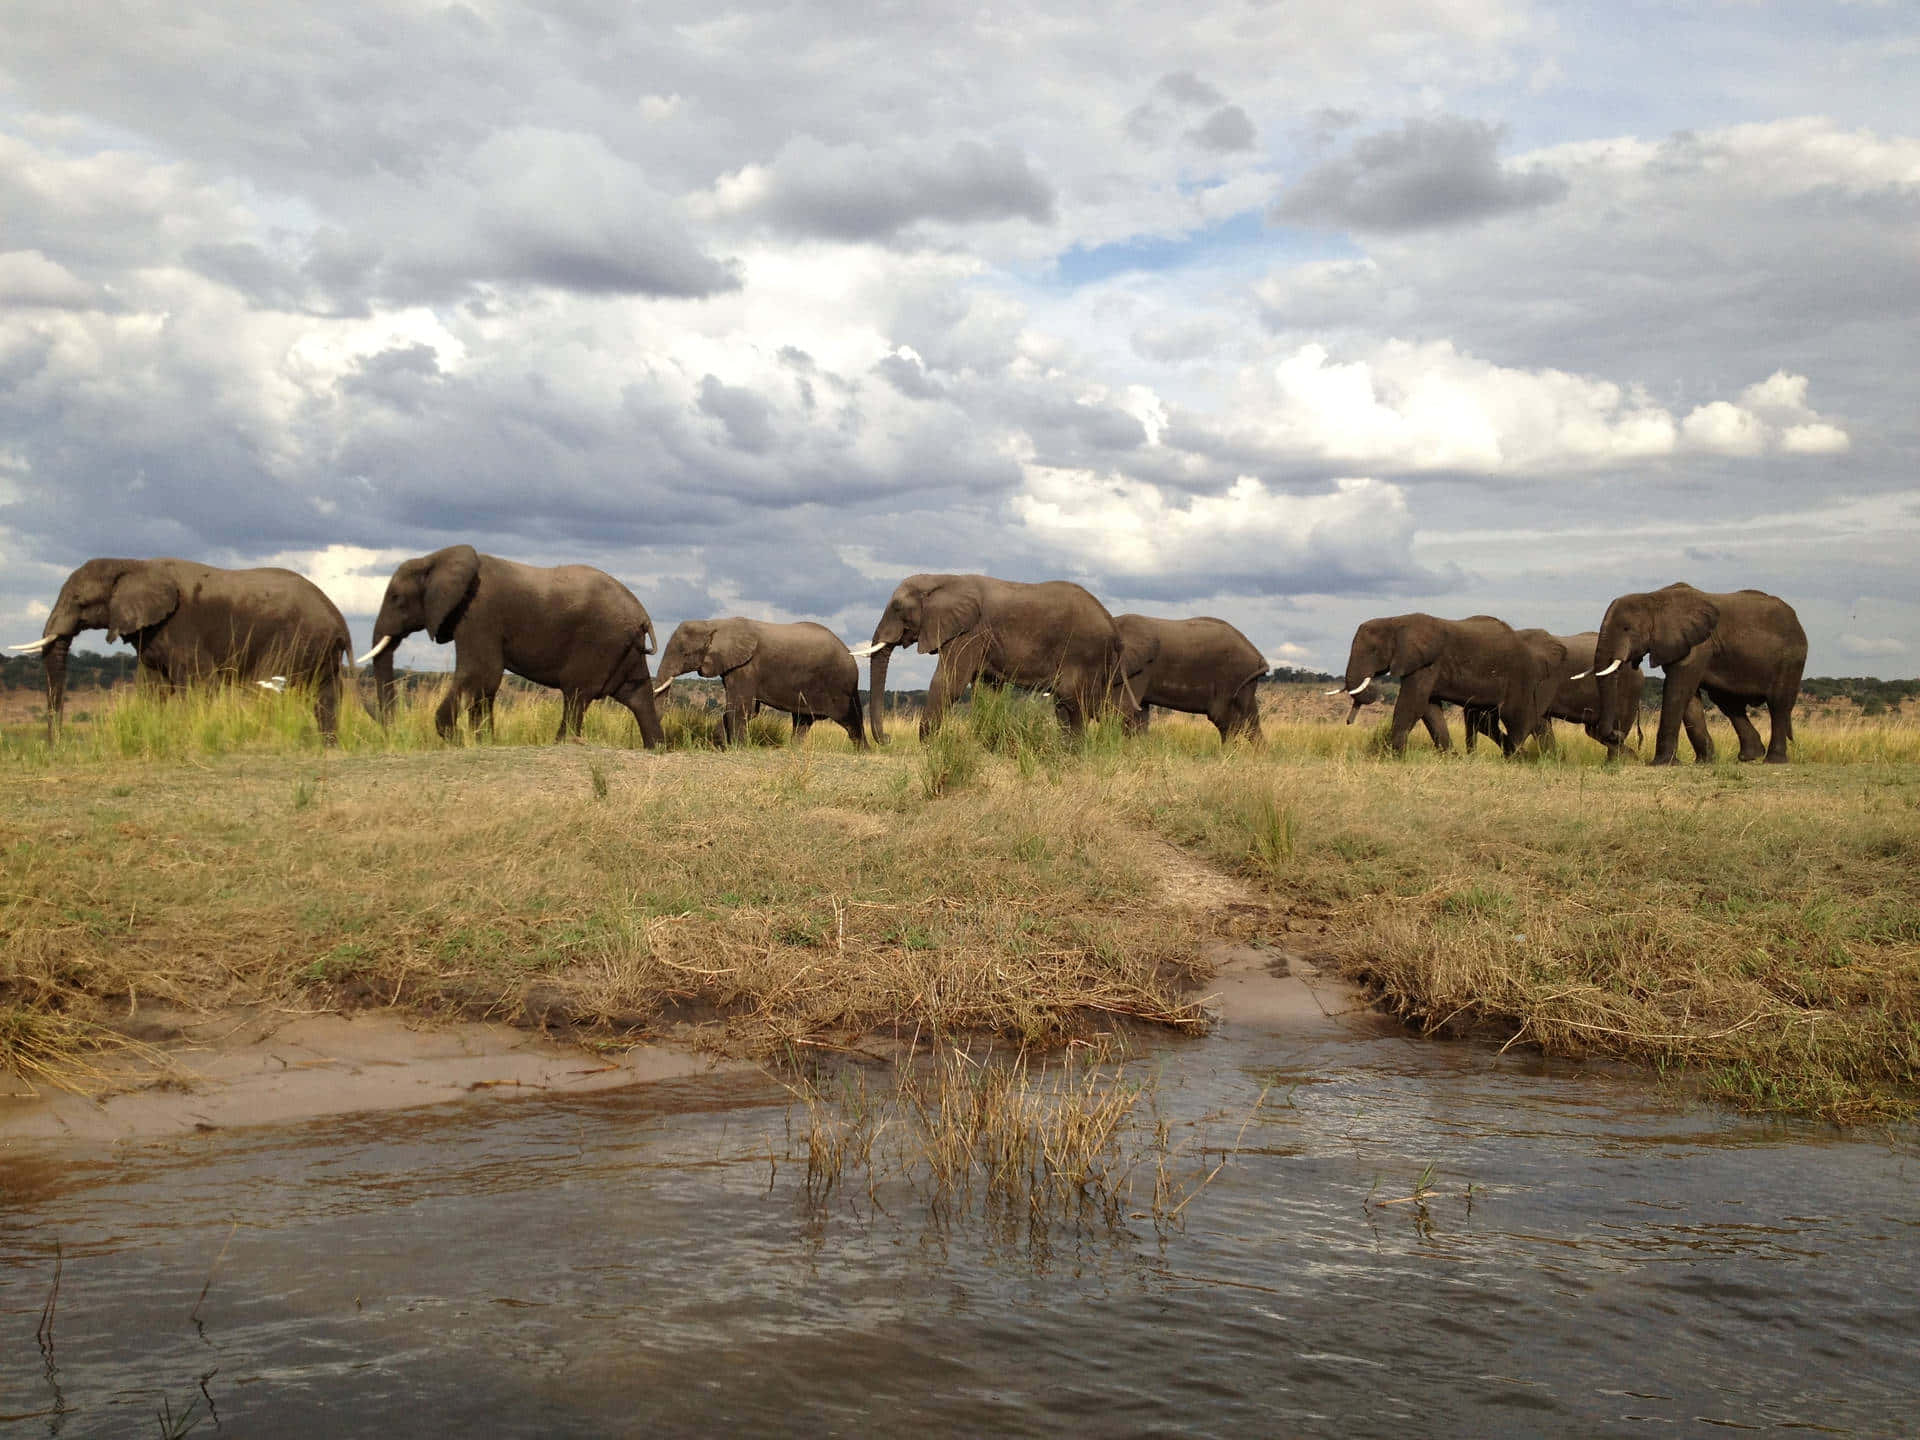 Unamanada De Elefantes Caminando Fondo de pantalla